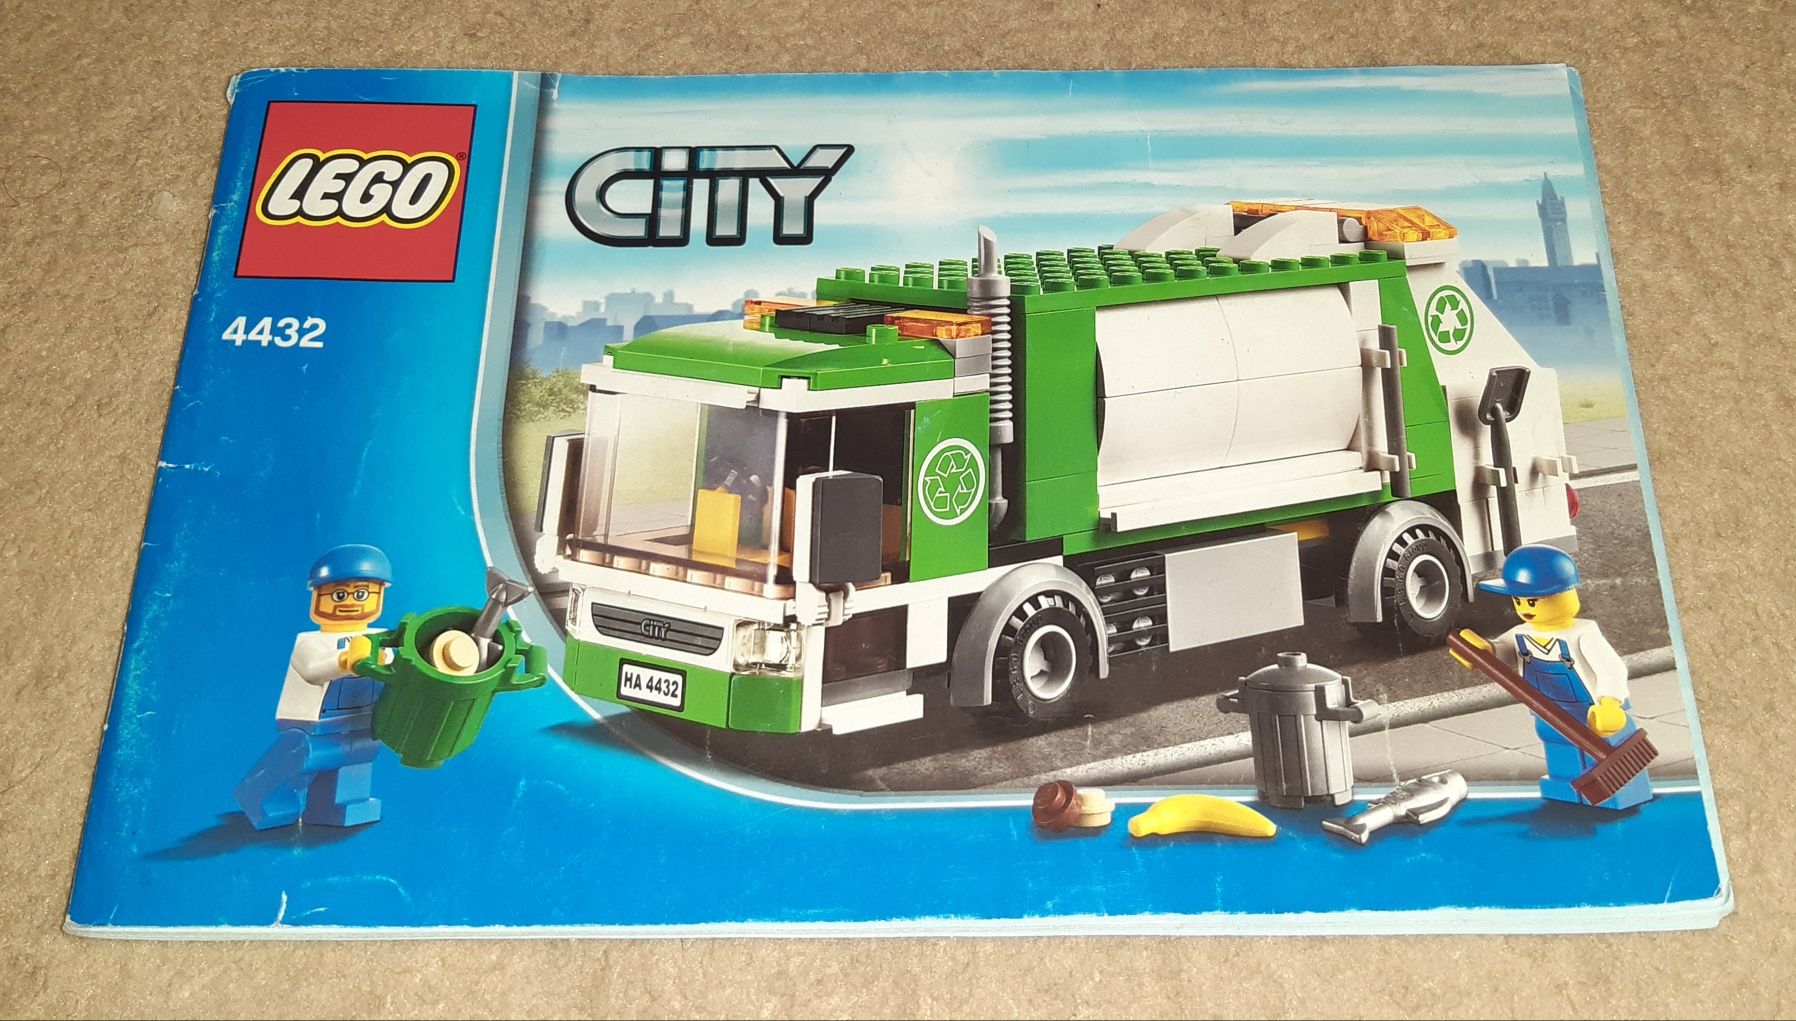 LEGO CITY 60121, 4432, 60164, 3222